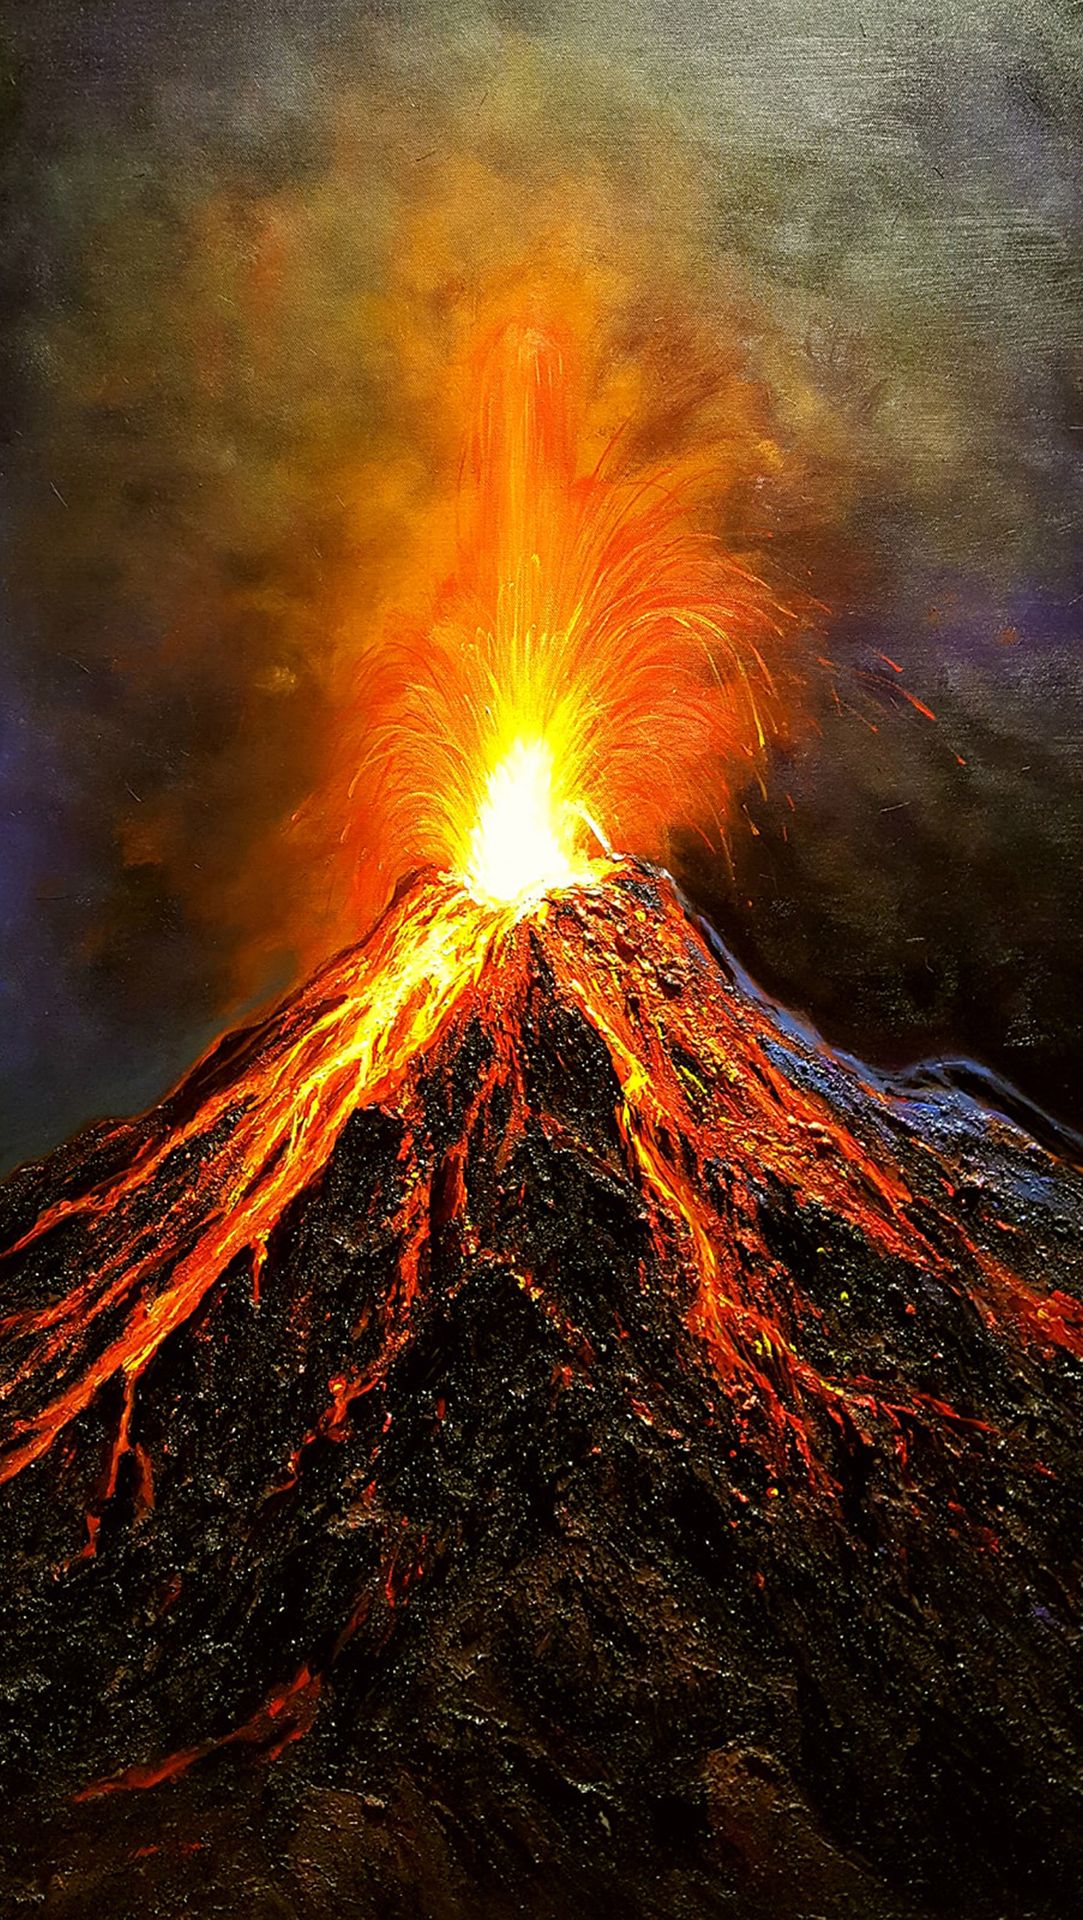 Tất cả quá trình phun trào của núi lửa đều ẩn chứa sự to lớn và hùng tráng. Hãy thưởng thức những hình ảnh núi lửa phun trào để cảm nhận được sức mạnh của thiên nhiên, giúp cho cuộc sống của bạn thêm phần kích thích và hứng khởi.